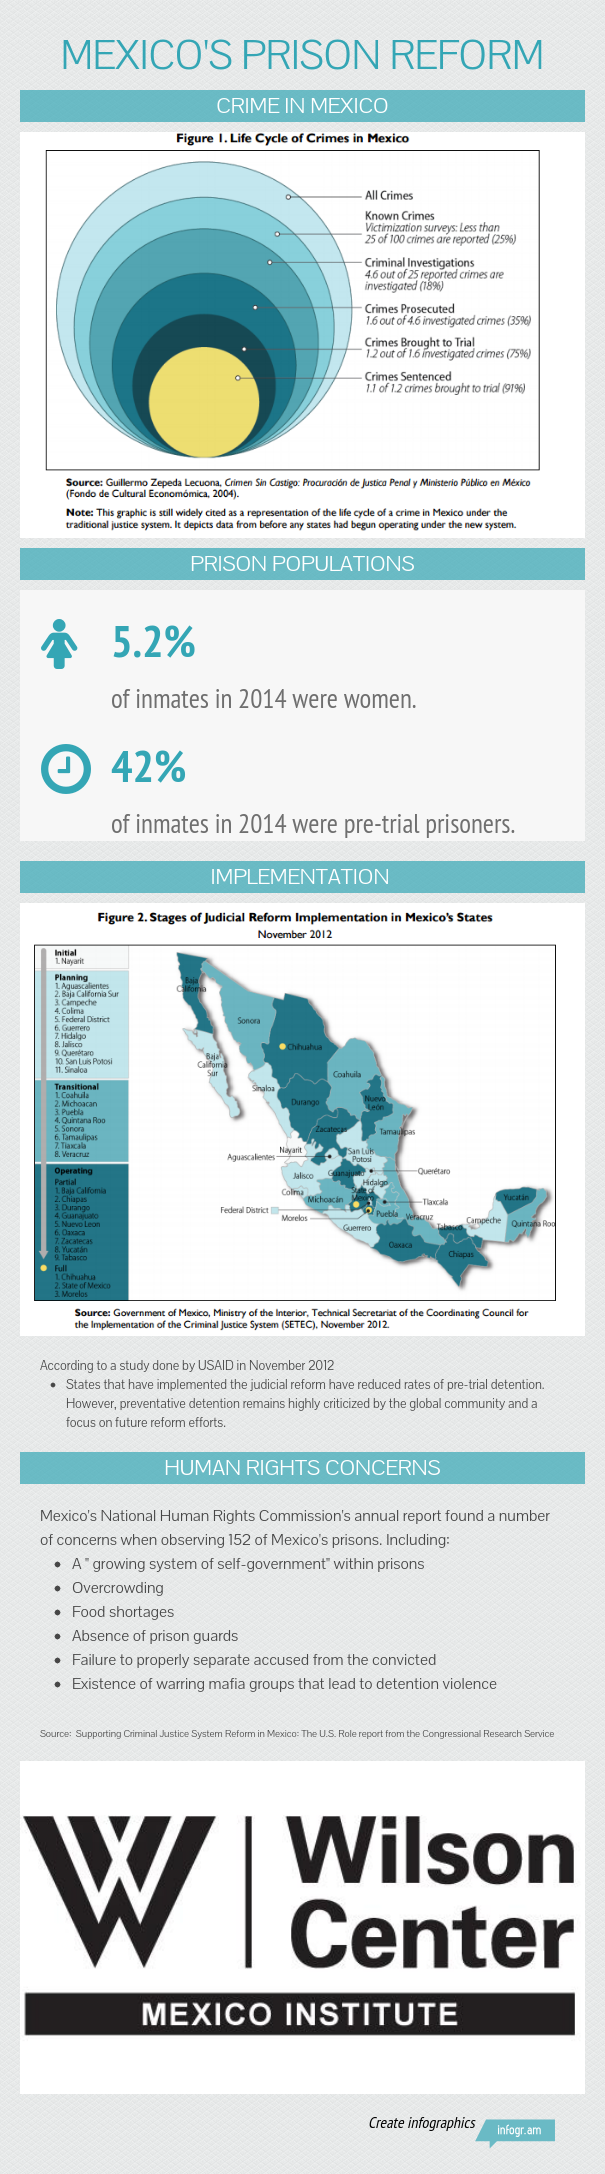 Mexico's Prison Reform